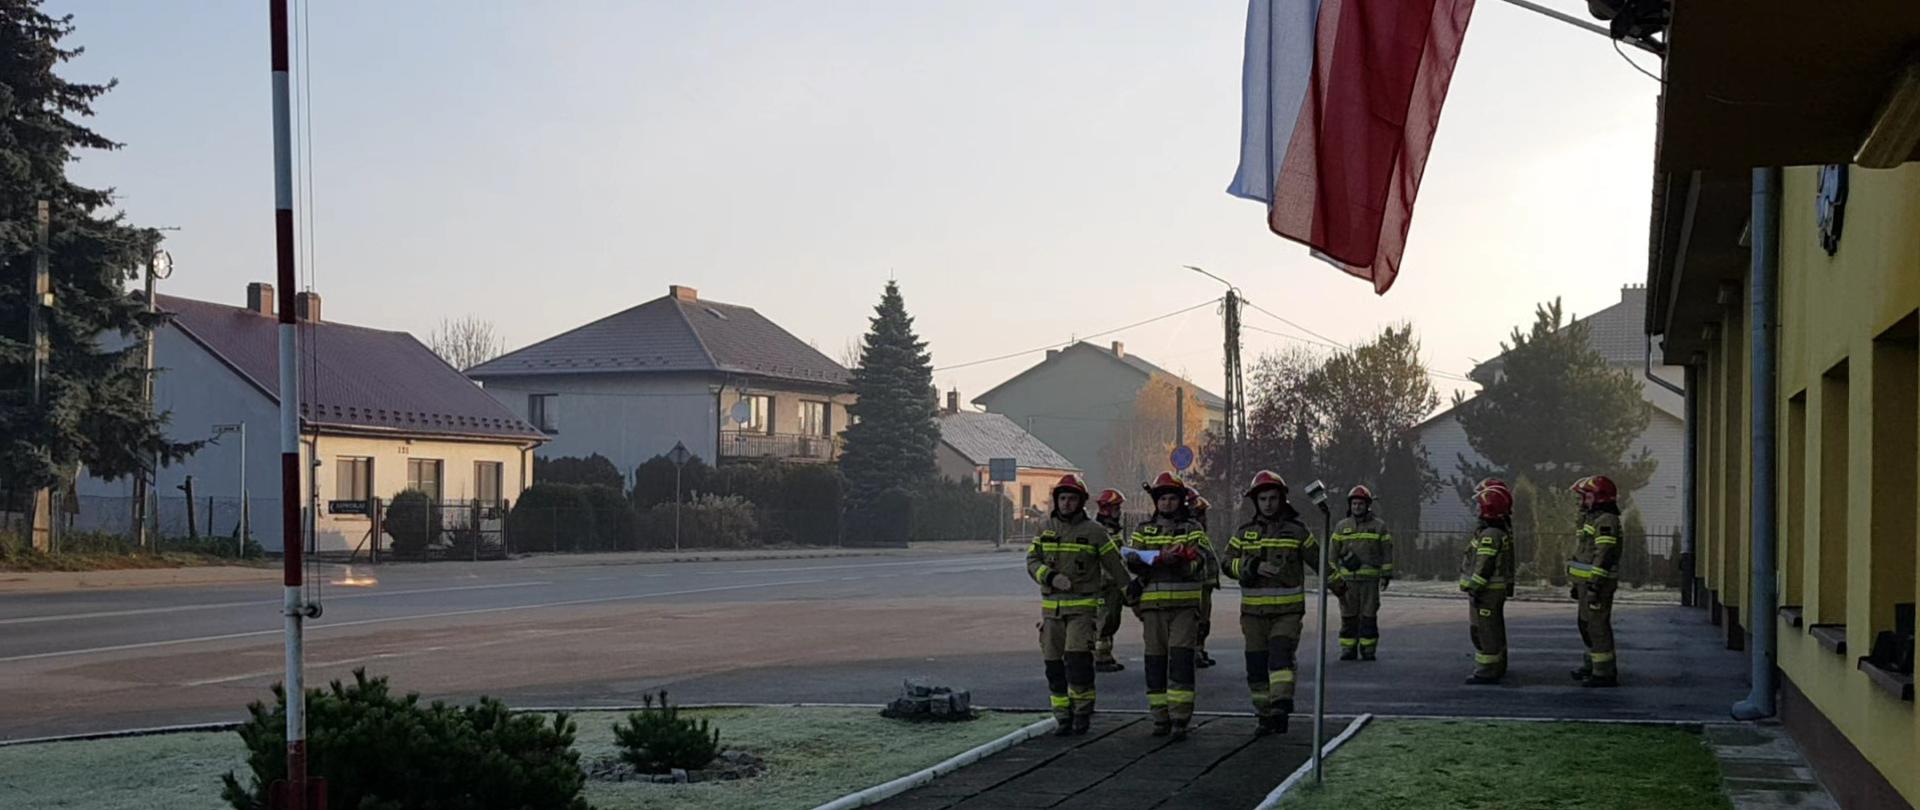 trzech strażaków maszeruje z flagą, w tle strażacy stoją w dwuszeregi.